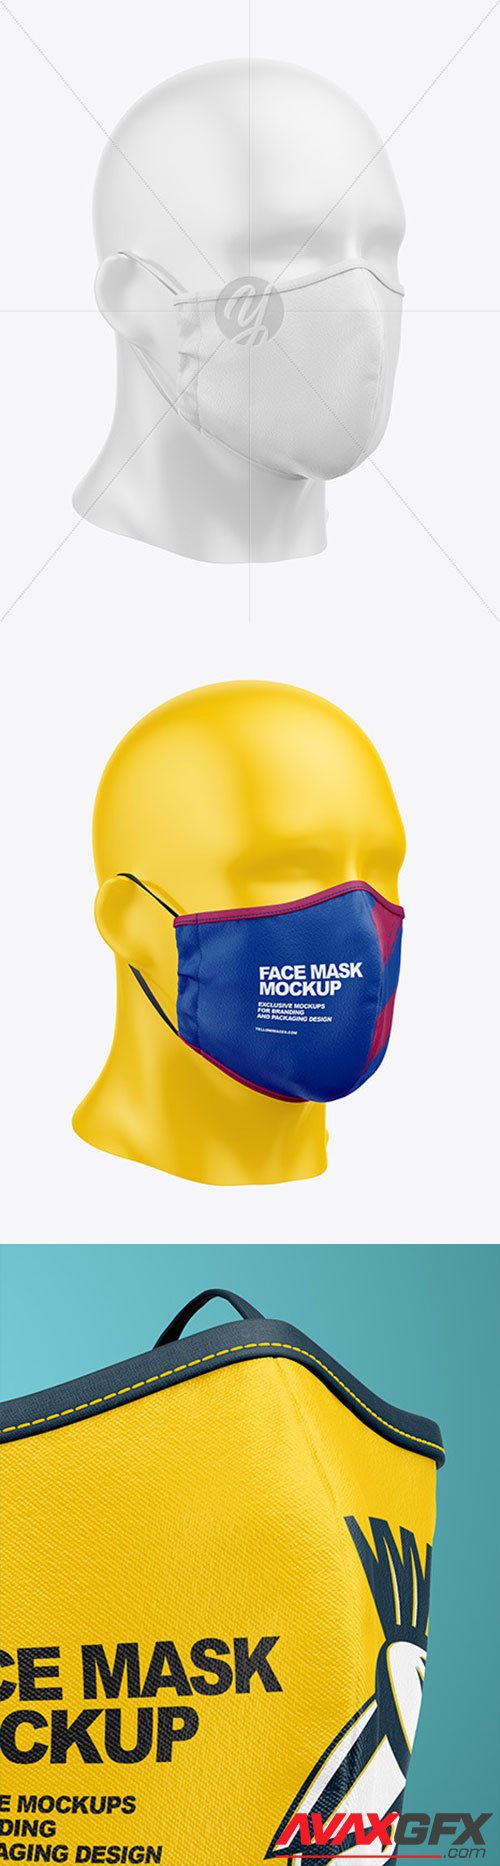 Face Mask Mockup 64988